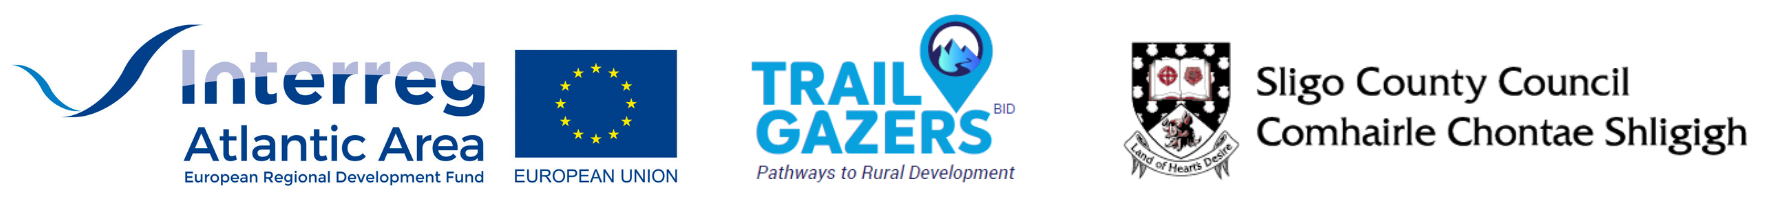 Trail Gazers_logos 